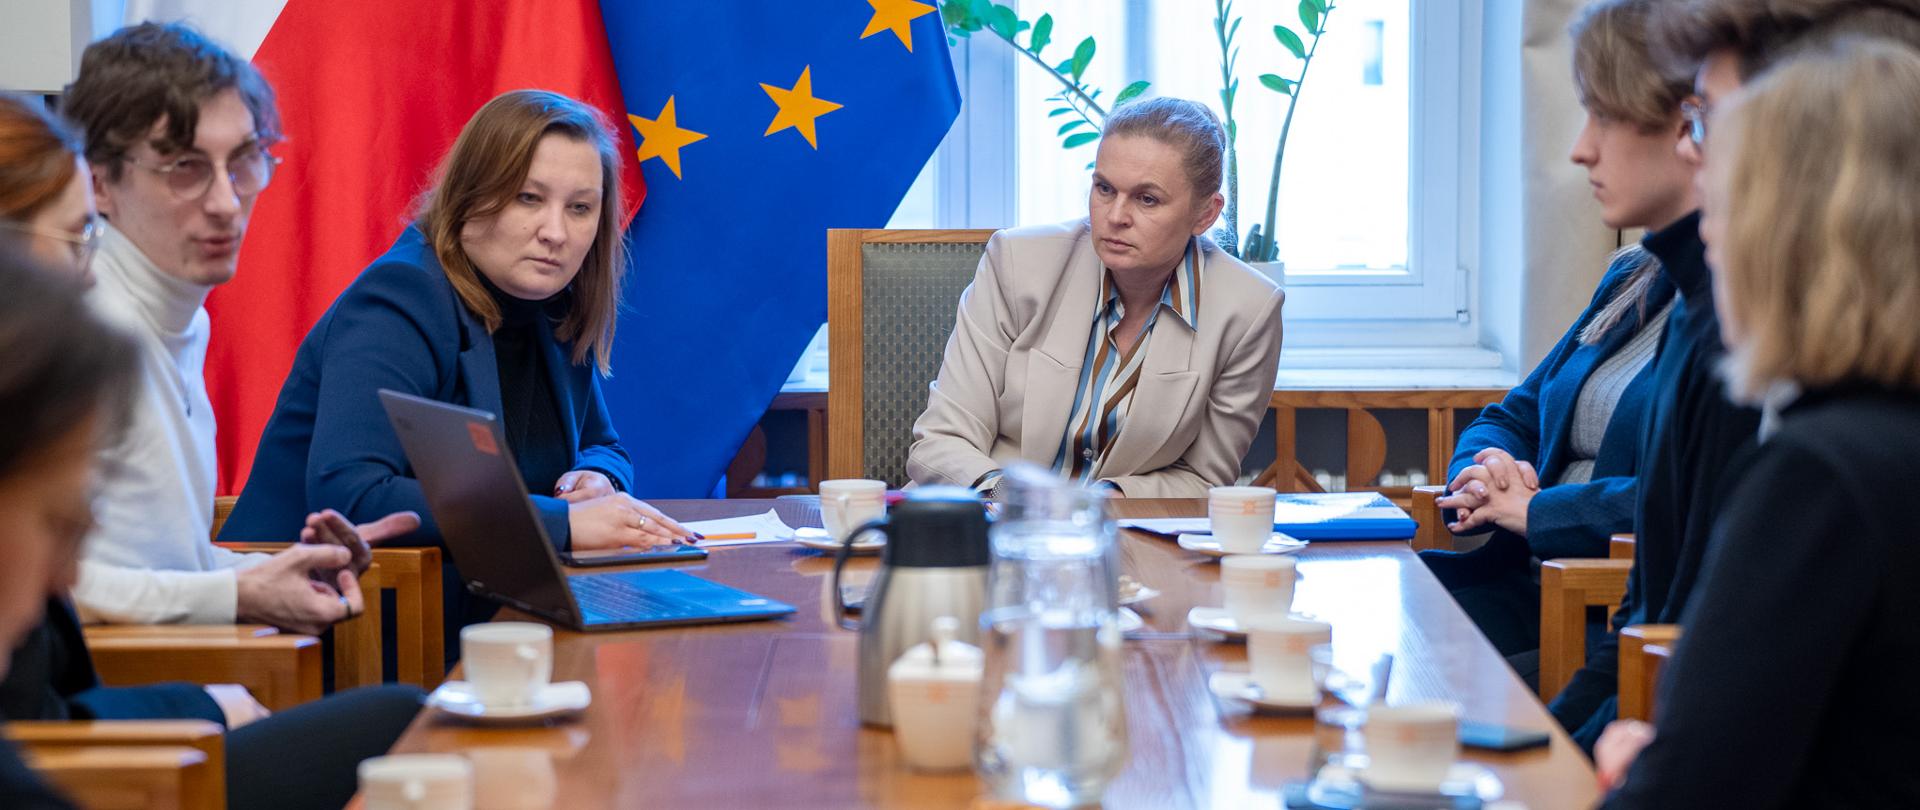 Na zdjęciu ministra Barbara Nowacka, wpatrzona w laptop, po lewej stronie ministra Piechna-Więckiewicz. Obydwie Panie analizują wyniki raportu przedstawianego na laptopie przez przedstawiciela fundacji